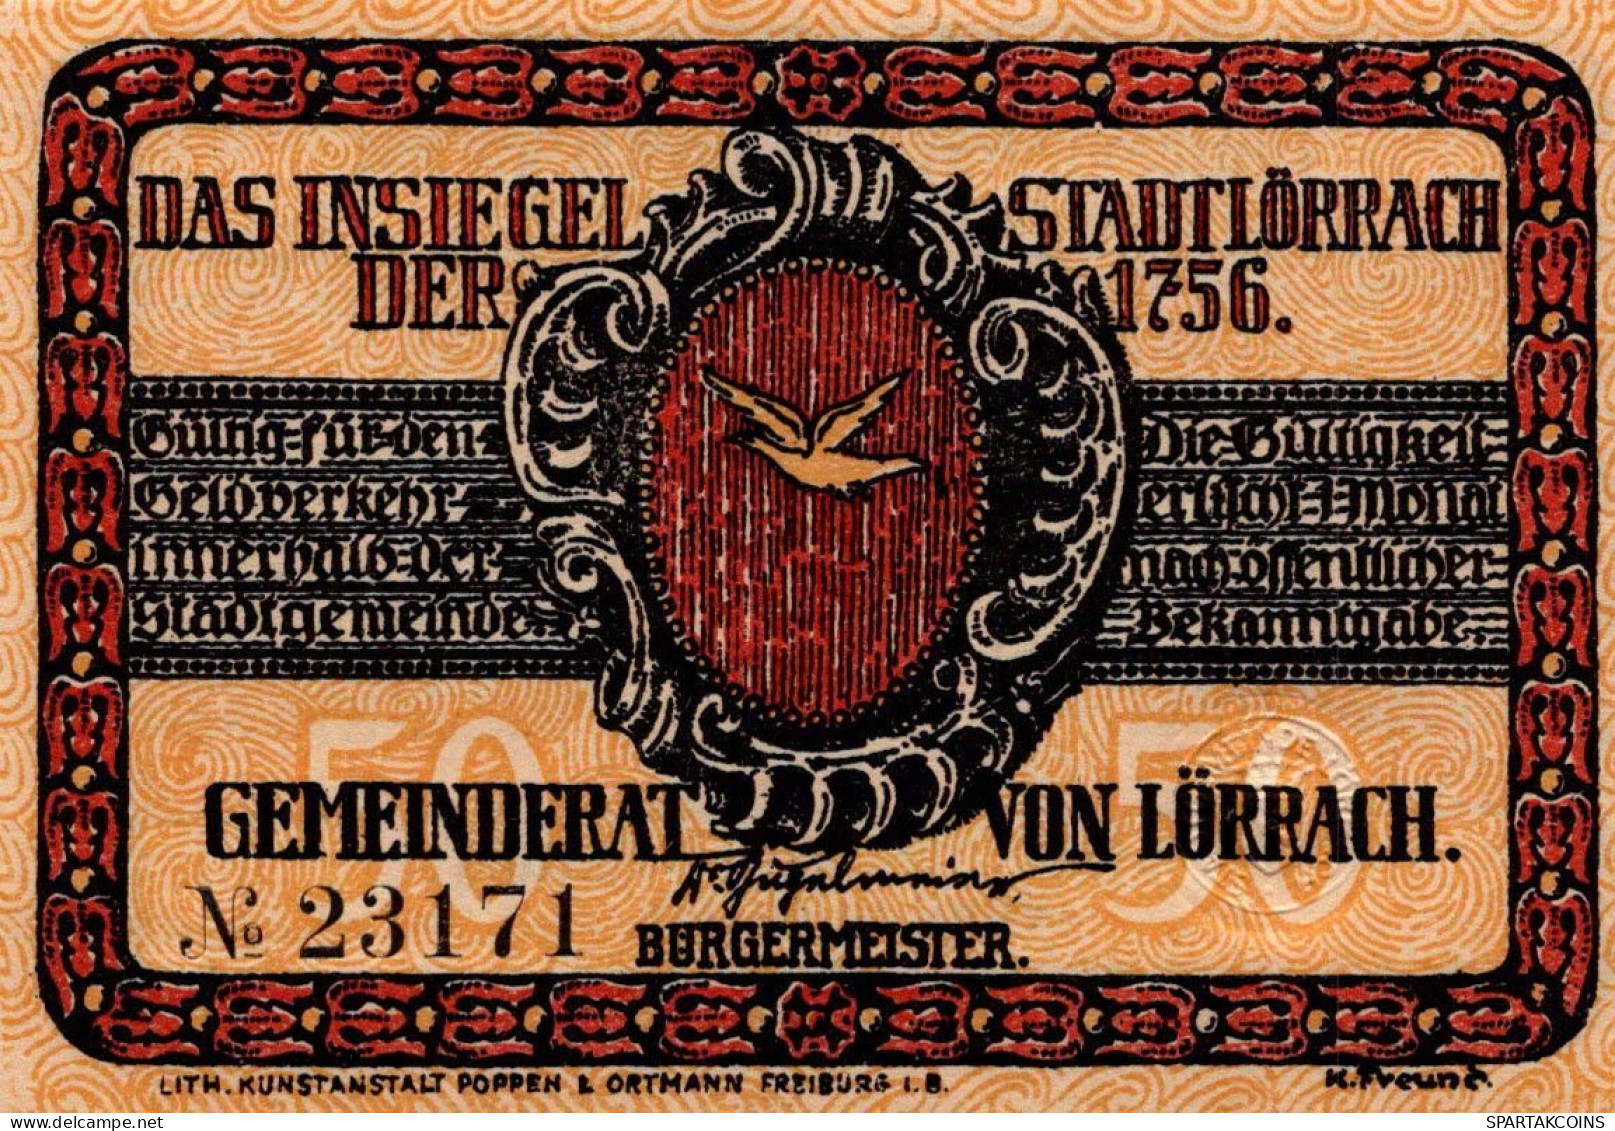 50 PFENNIG 1922 Stadt LoRRACH Baden UNC DEUTSCHLAND Notgeld Banknote #PC488 - [11] Emisiones Locales